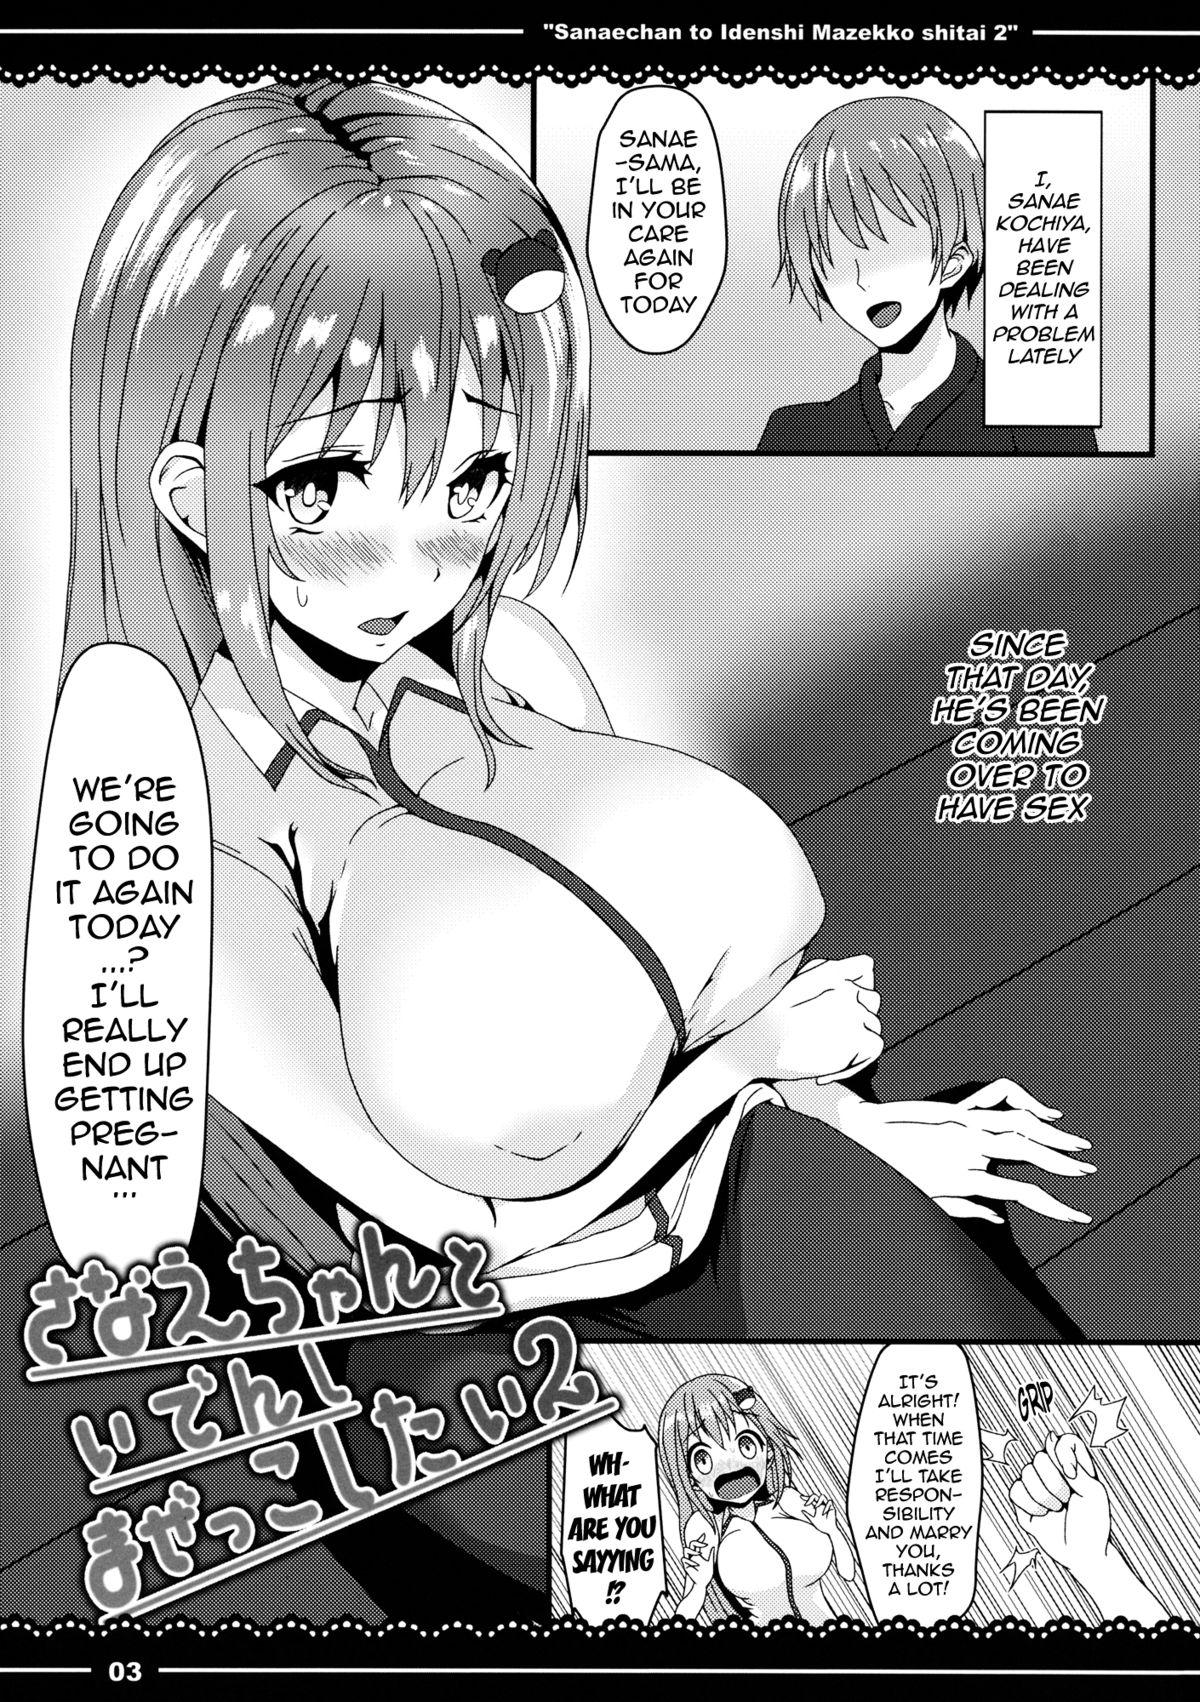 Sucking Dick (Kouroumu 10) [Yoshida Kingdom (SIBAMURA)] Sanae-chan to Idenshi Mazekko Shitai 2 | I Want to Mix Genes With Sanae-chan 2 (Touhou Project) [English] {doujin-moe.us} - Touhou project Big Cock - Page 4